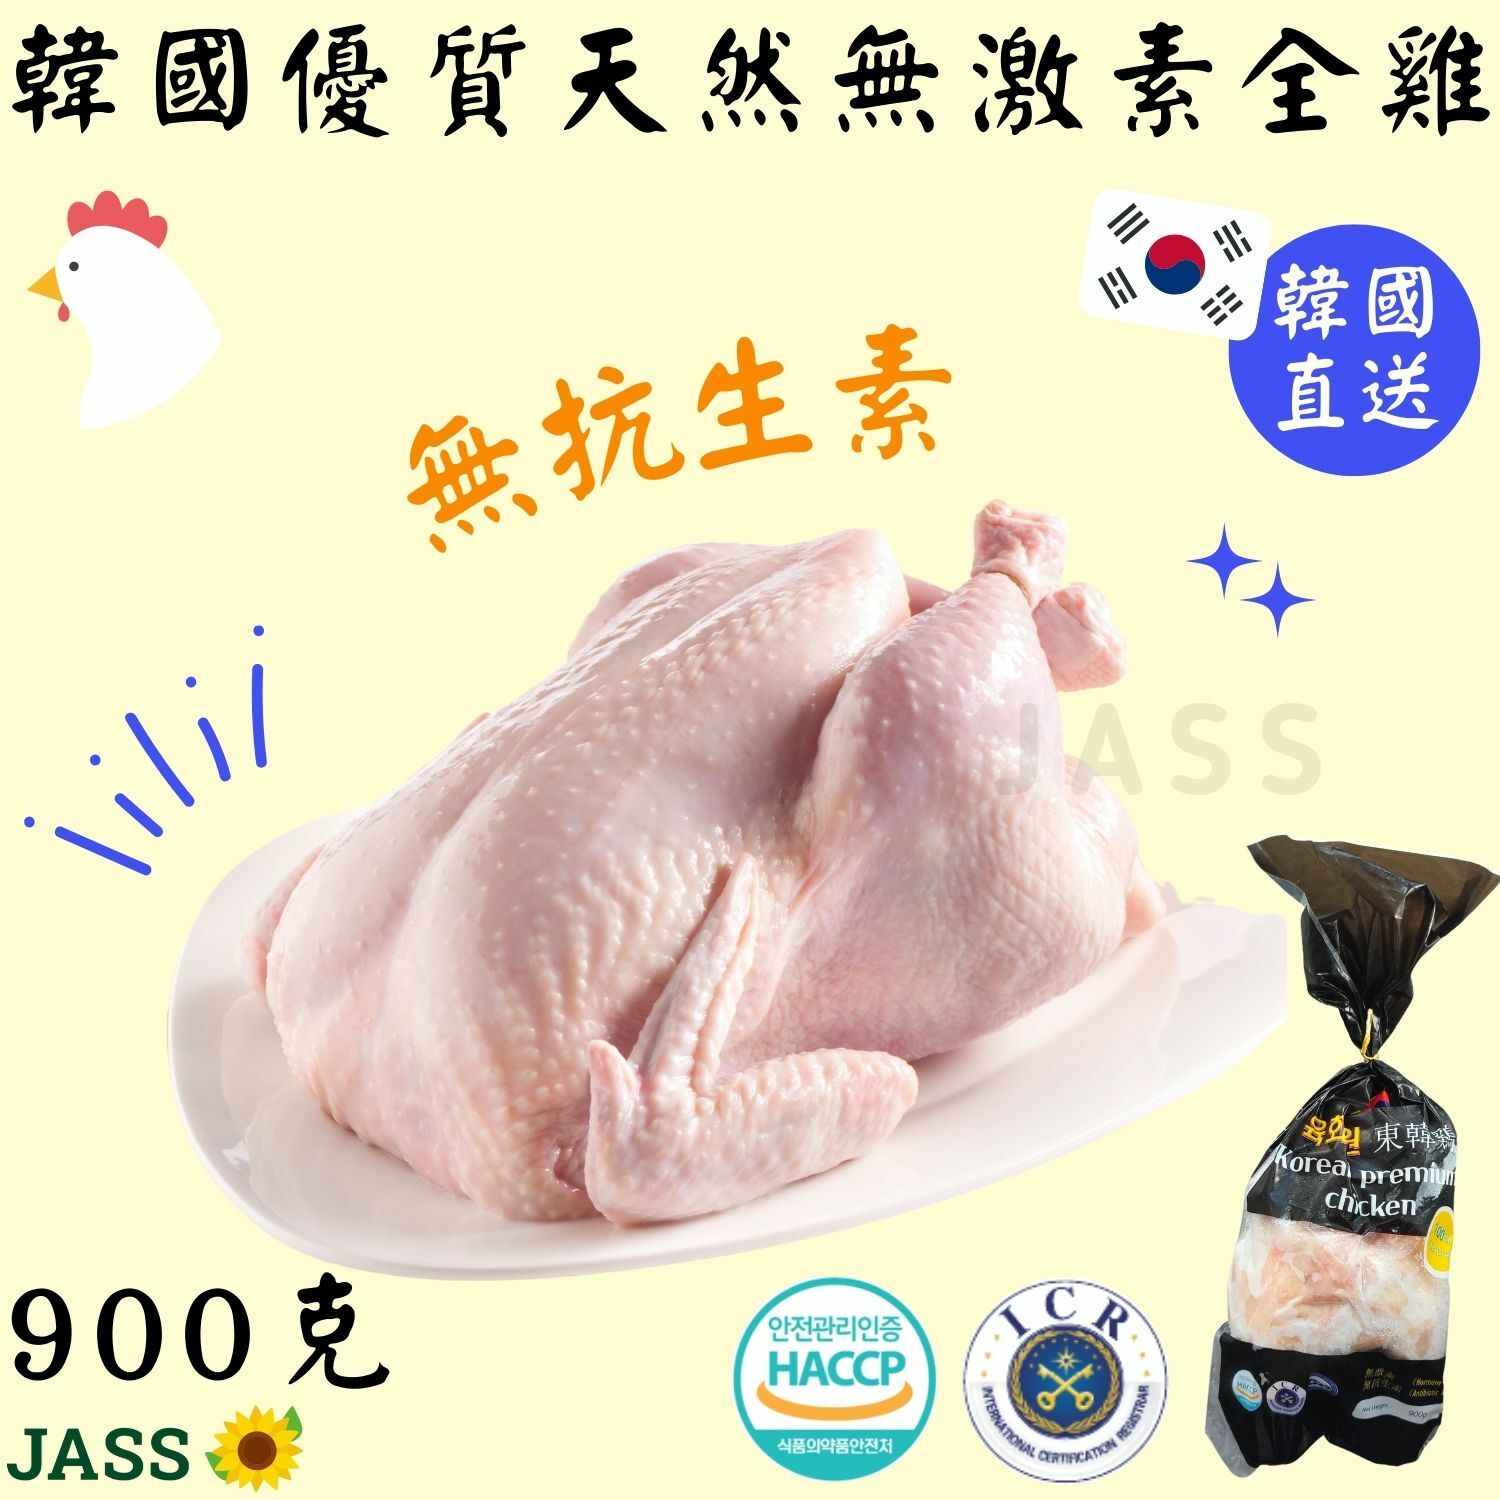 韓國食品-Korean Frozen Whole Chicken 1000g